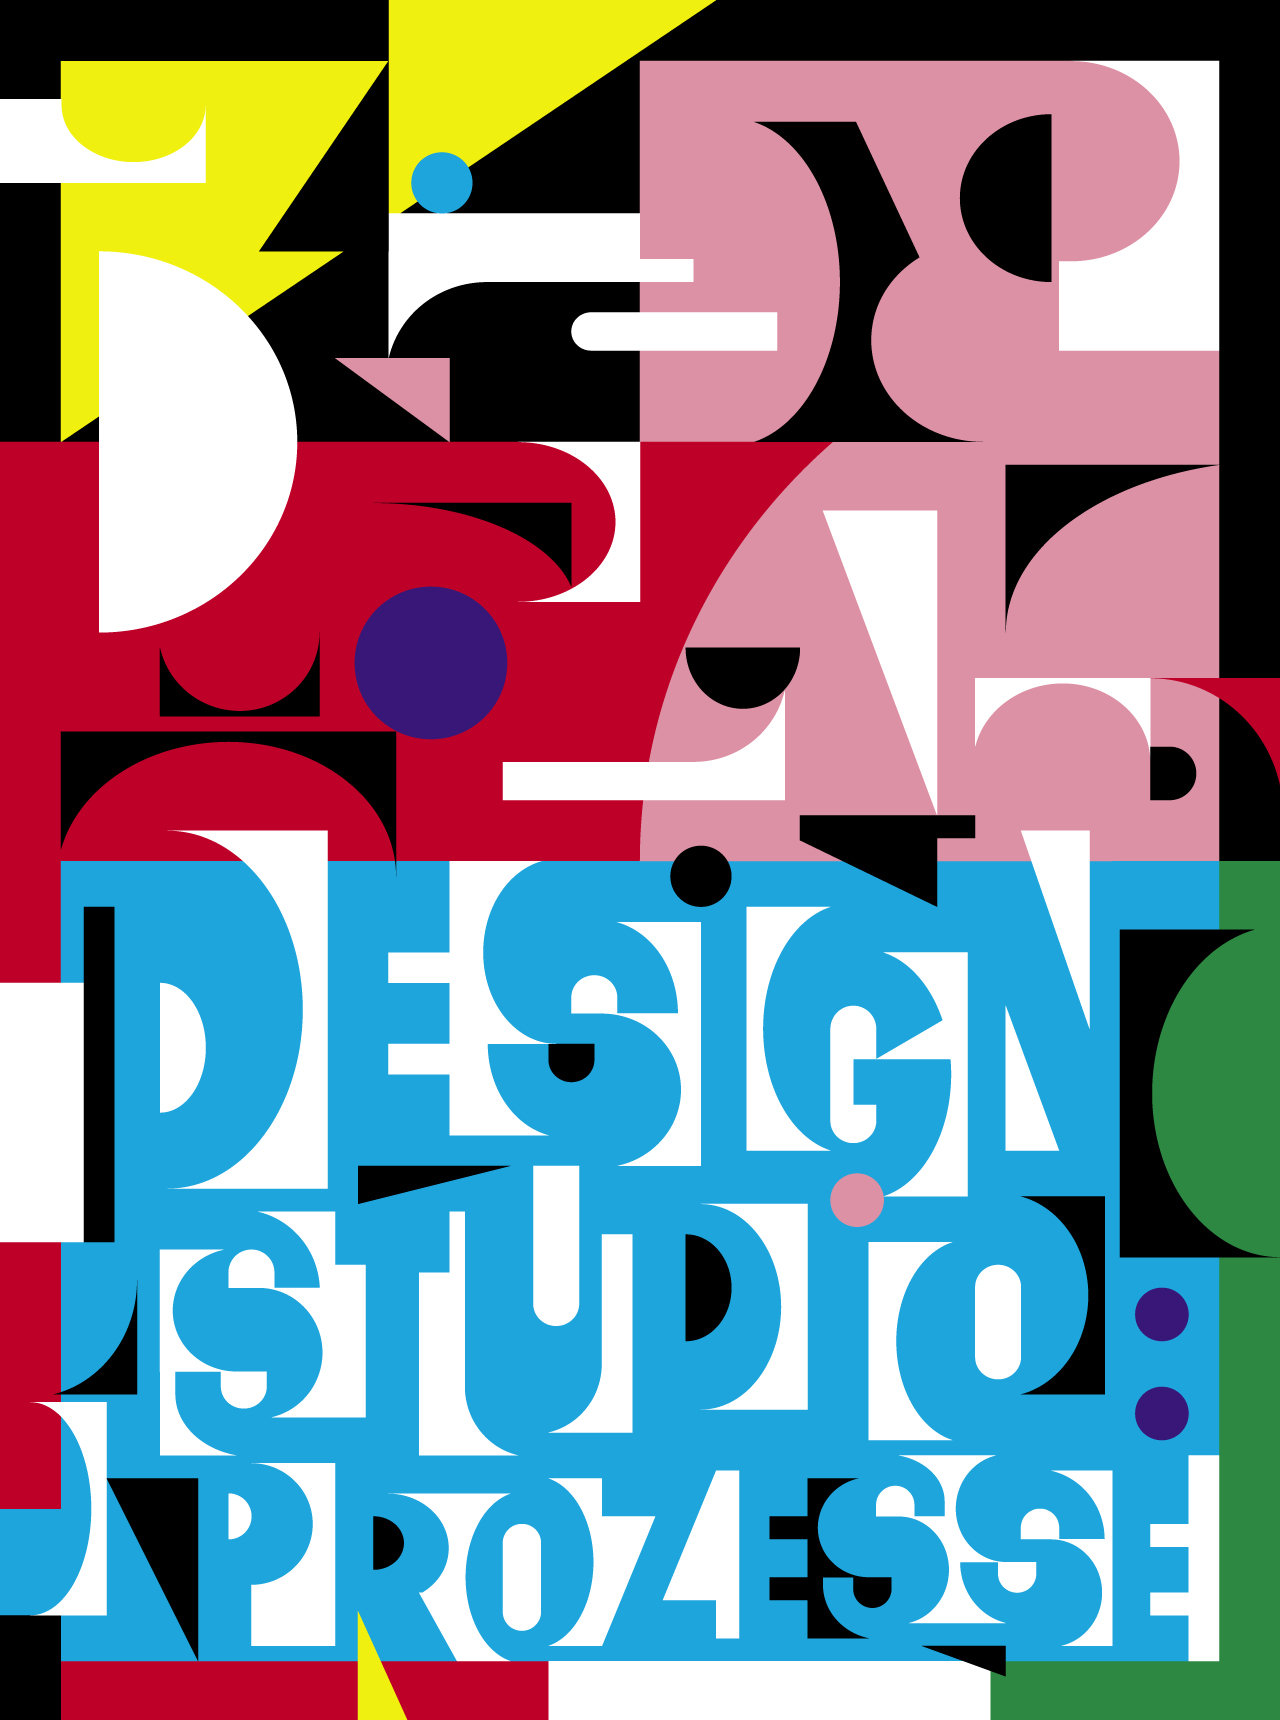 Plakat Design Studio: Prozesse Museum für Gestaltung Zürich